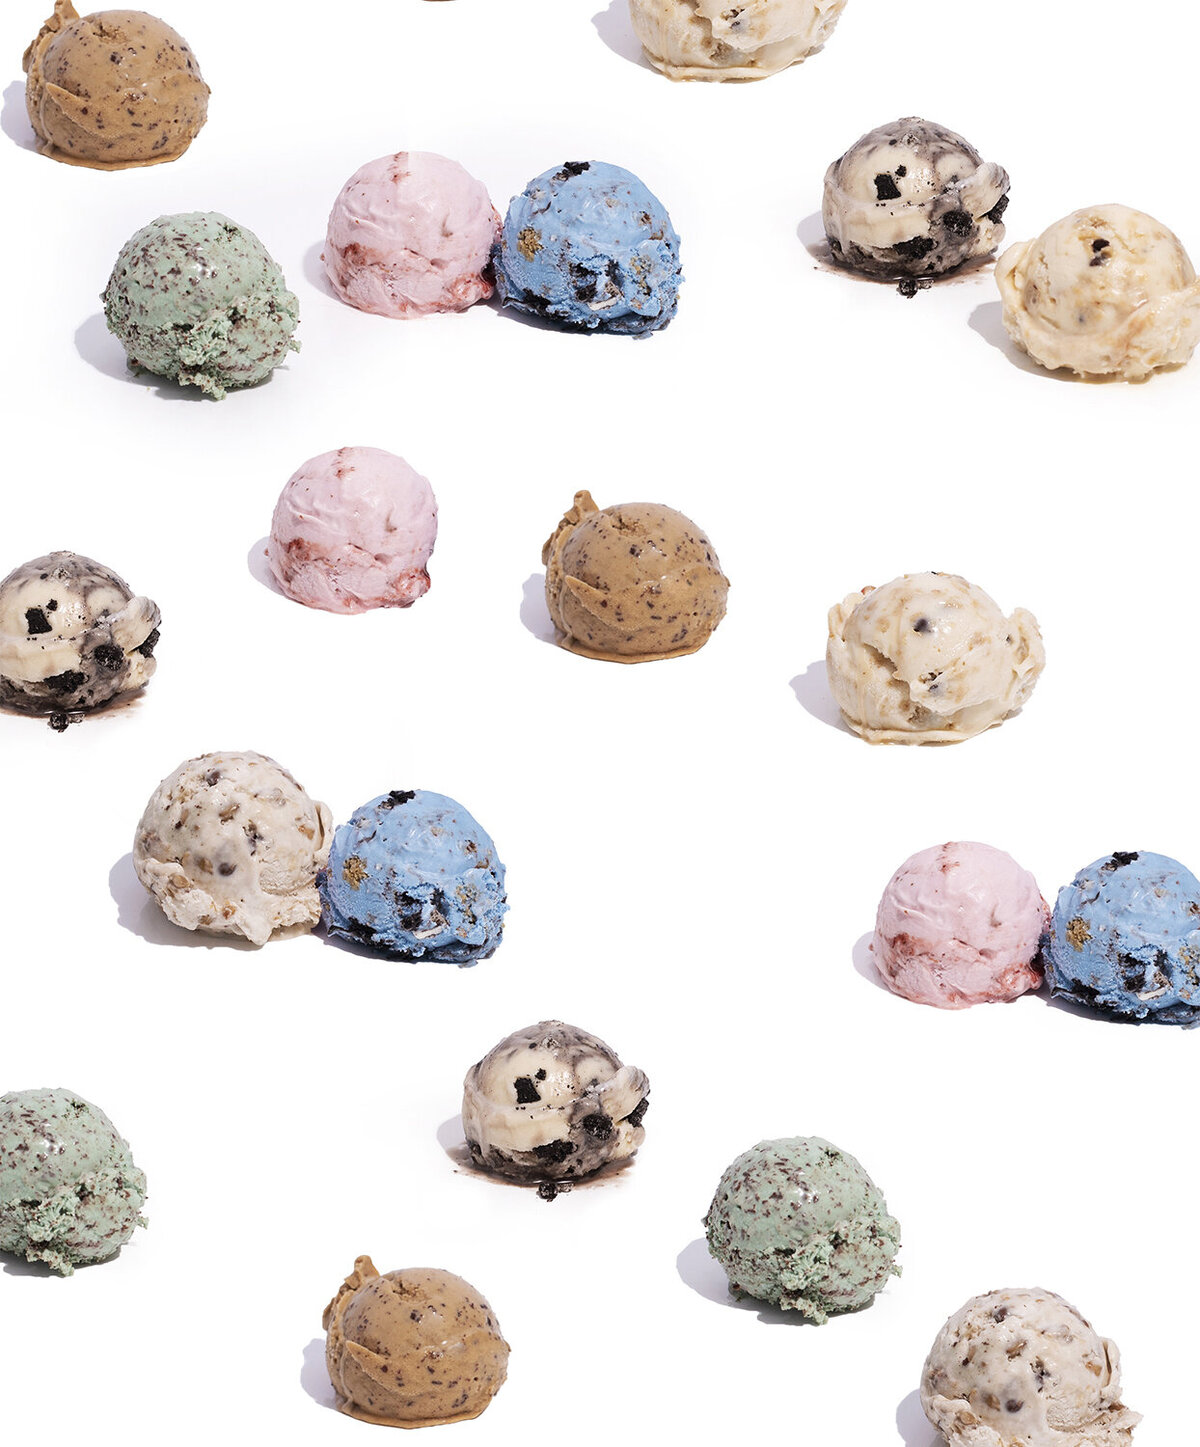 cocobella creamery vegan ice cream photography ice scream scoops